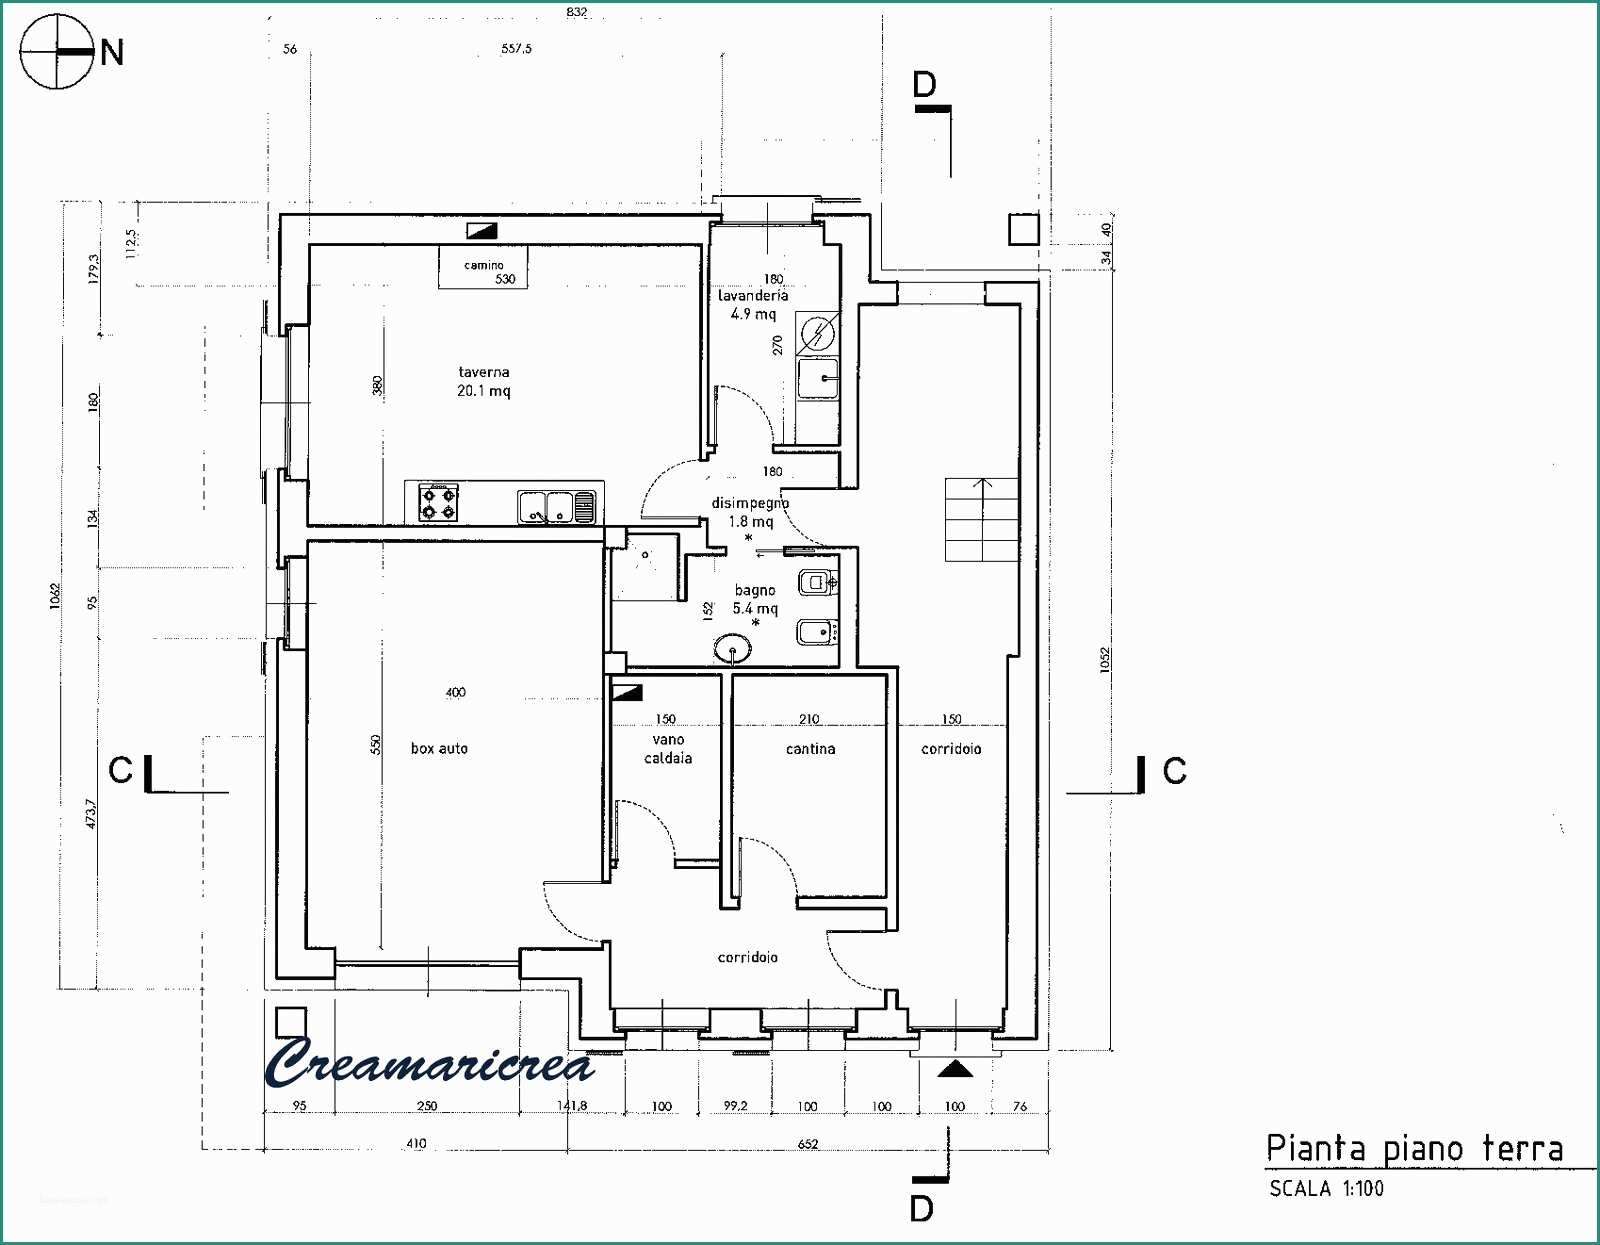 Progetto Rampa Disabili Dwg E Ville Dwg Farnsworth House Plano Il U S A by Mies Van Der Rohe